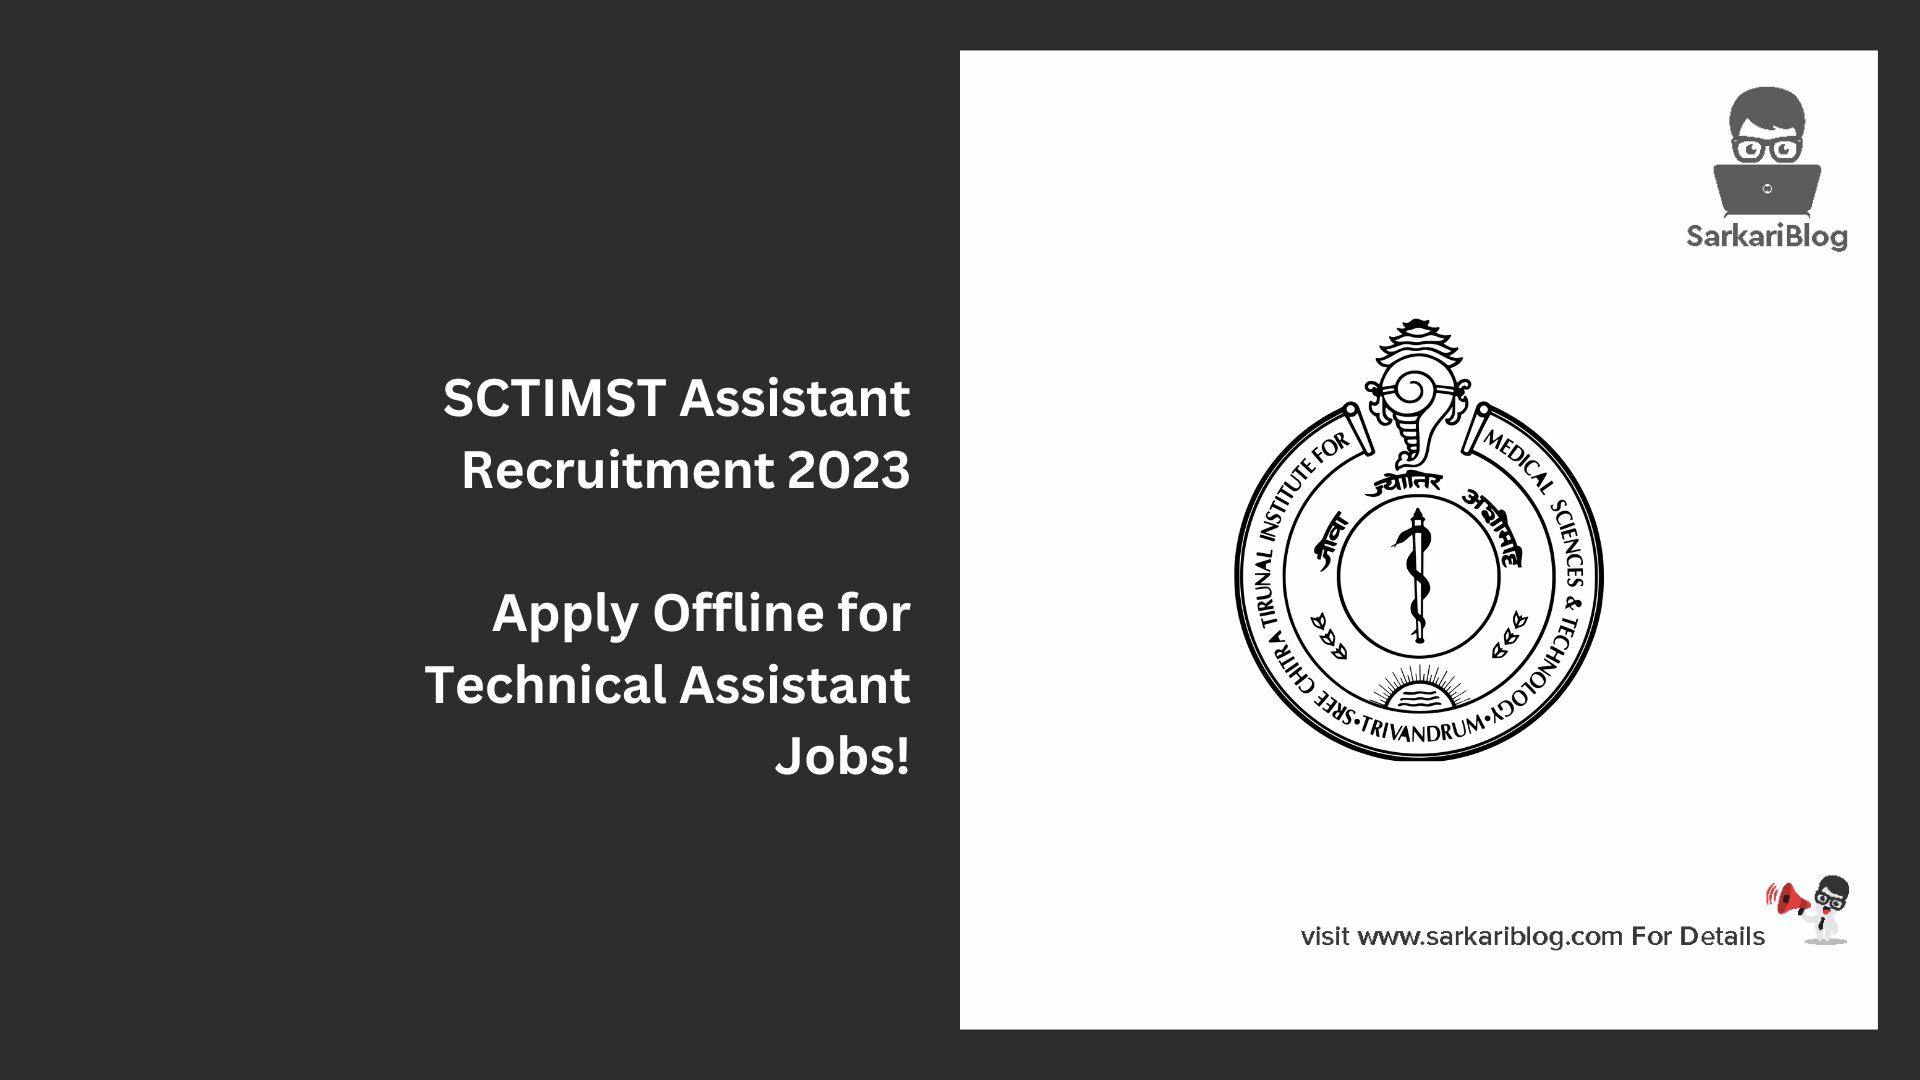 SCTIMST Assistant Recruitment 2023